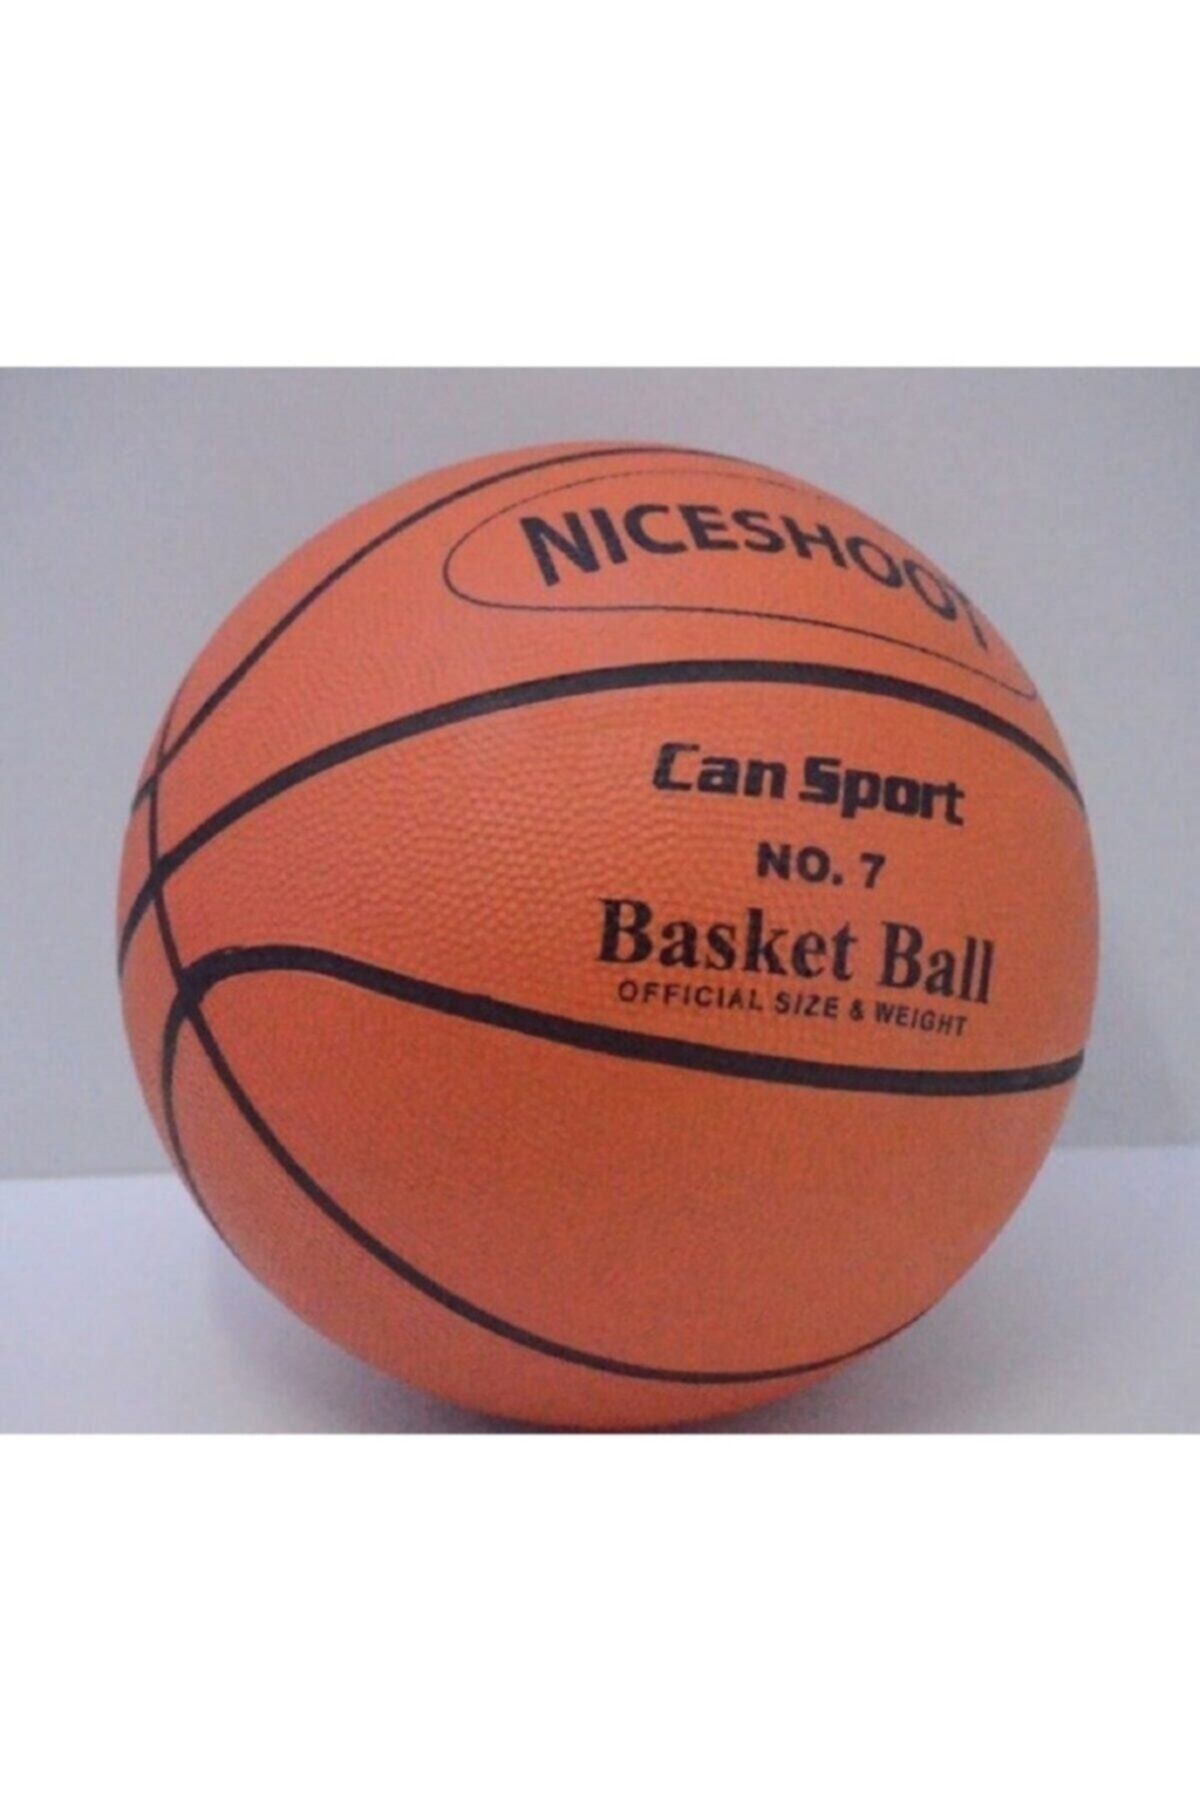 EMİRCAN Can Basketbol Topu %100 Kauçuktan Üretilmiştir 1. Sınıf Kalite 7 Numara Basketbol Topu